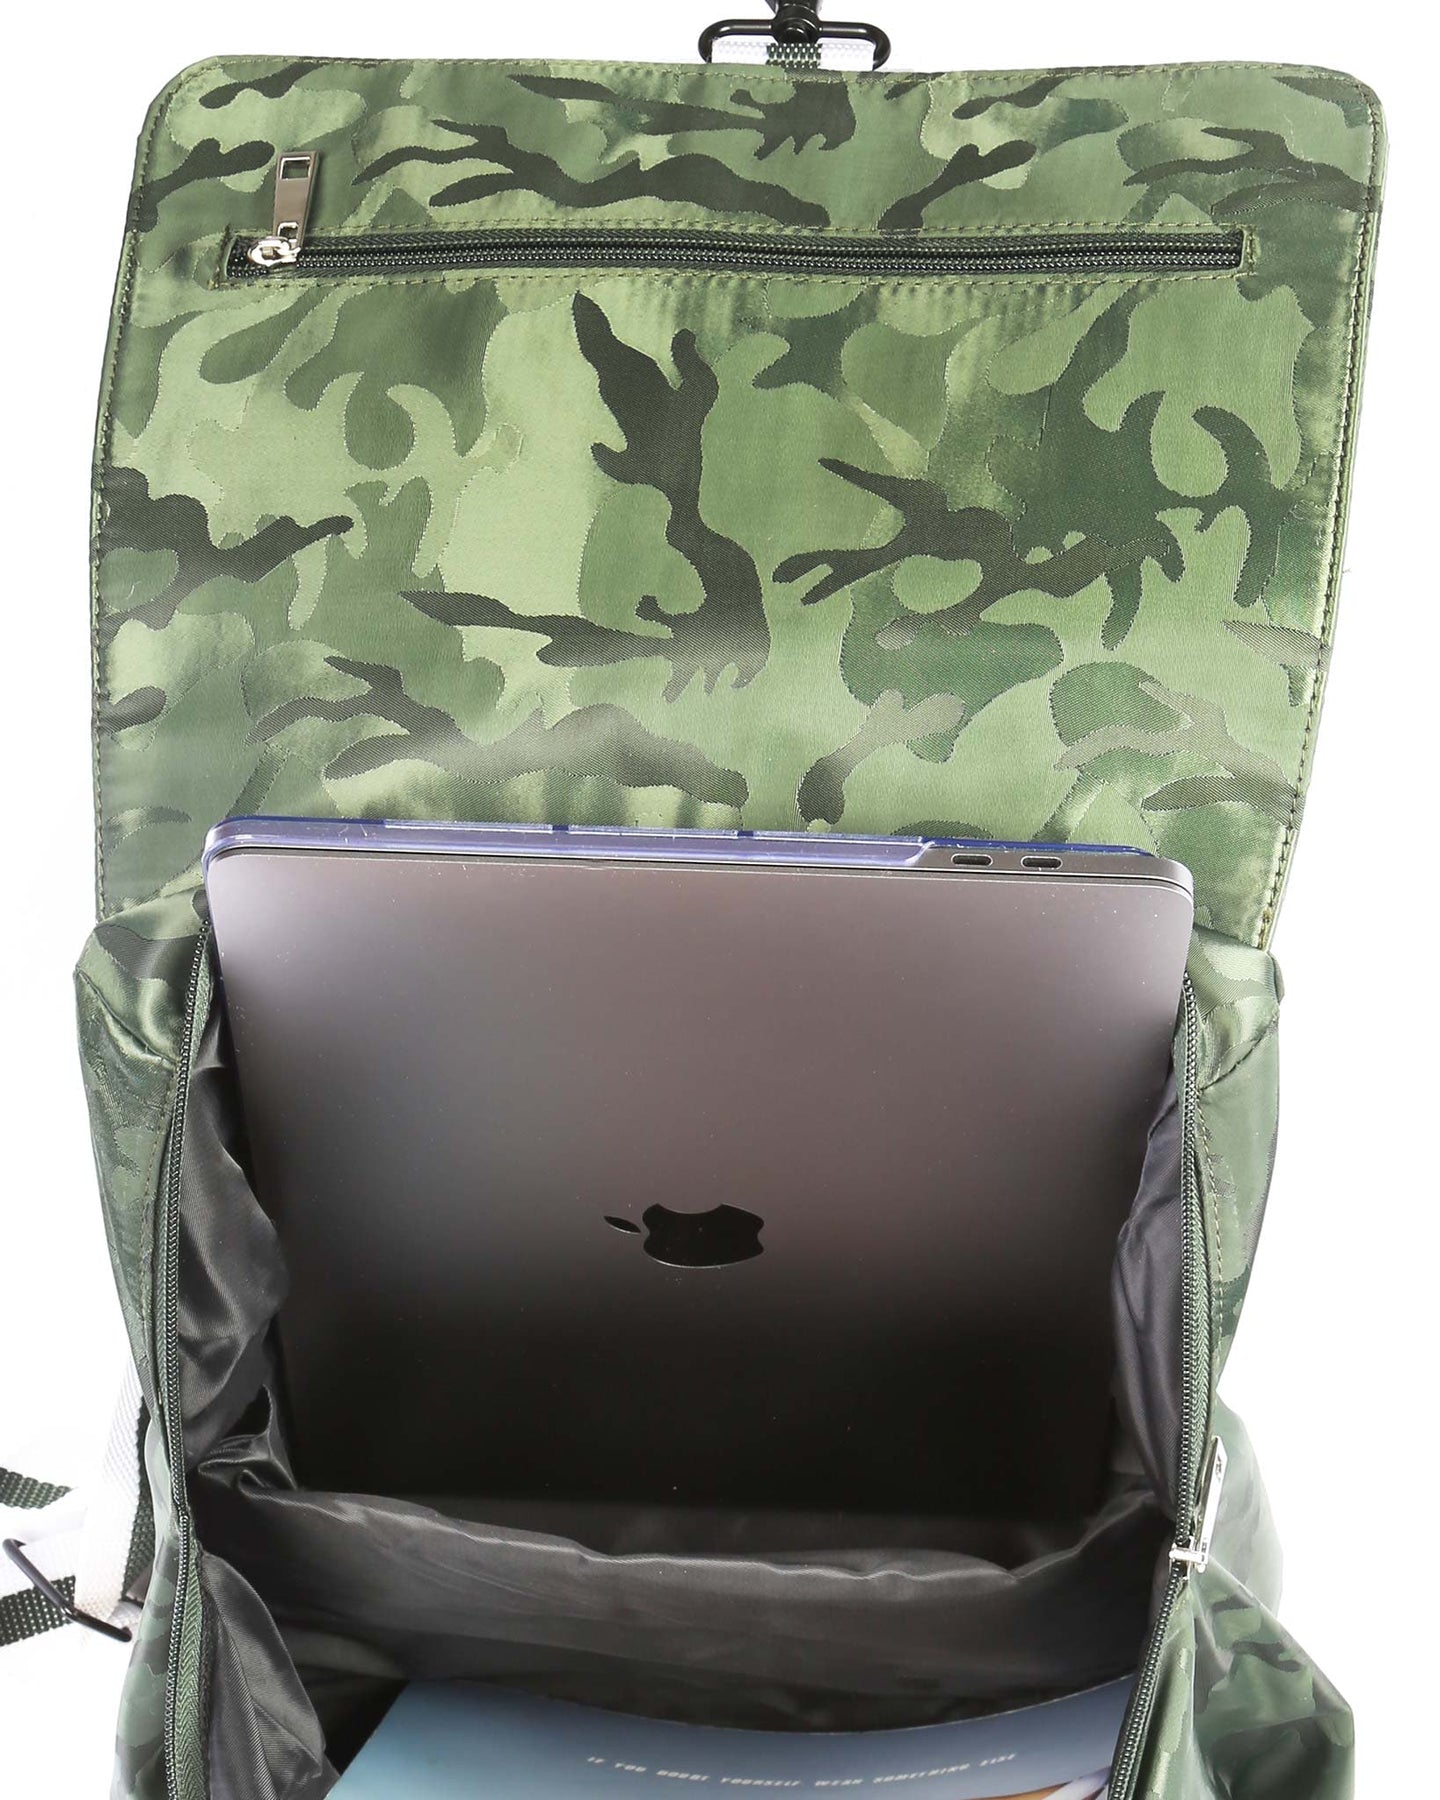 Maverick Backpack